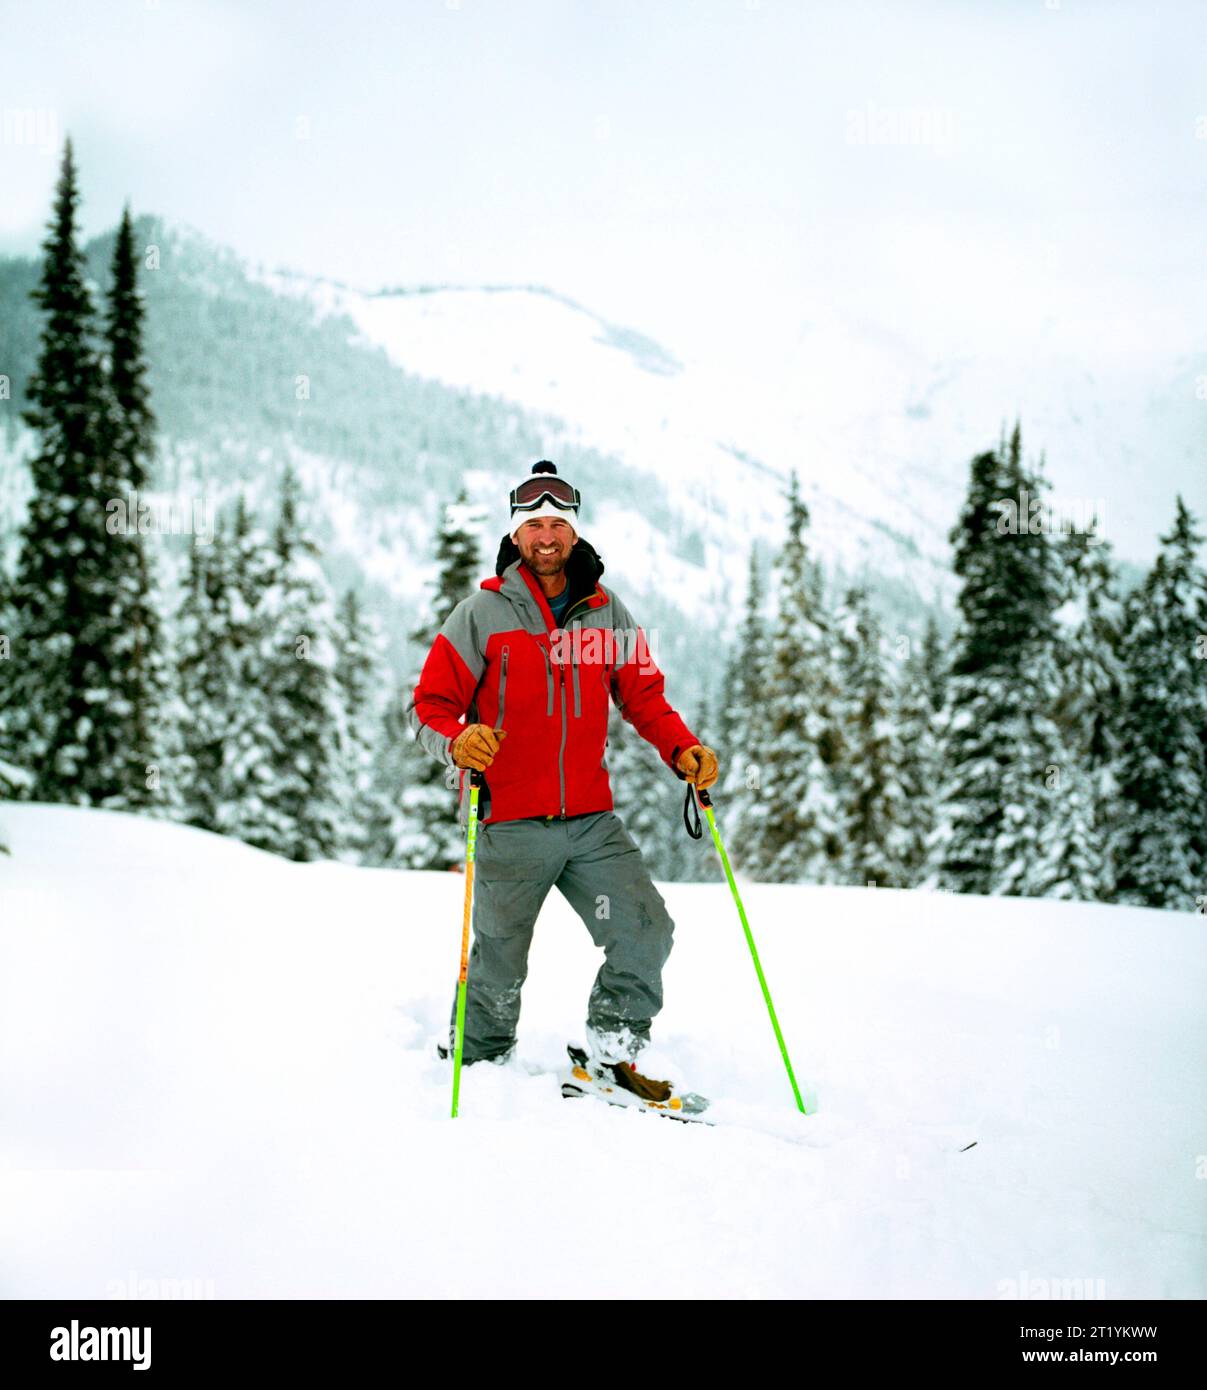 Der bekannte Skifahrer und Jurist von Skiwettbewerben, Jim Jack, steht im frischen Powder. Jim wurde 2012 in einer Lawine gefangen und wurde mit drei weiteren Skifahrern im Hinterland getötet. Stockfoto